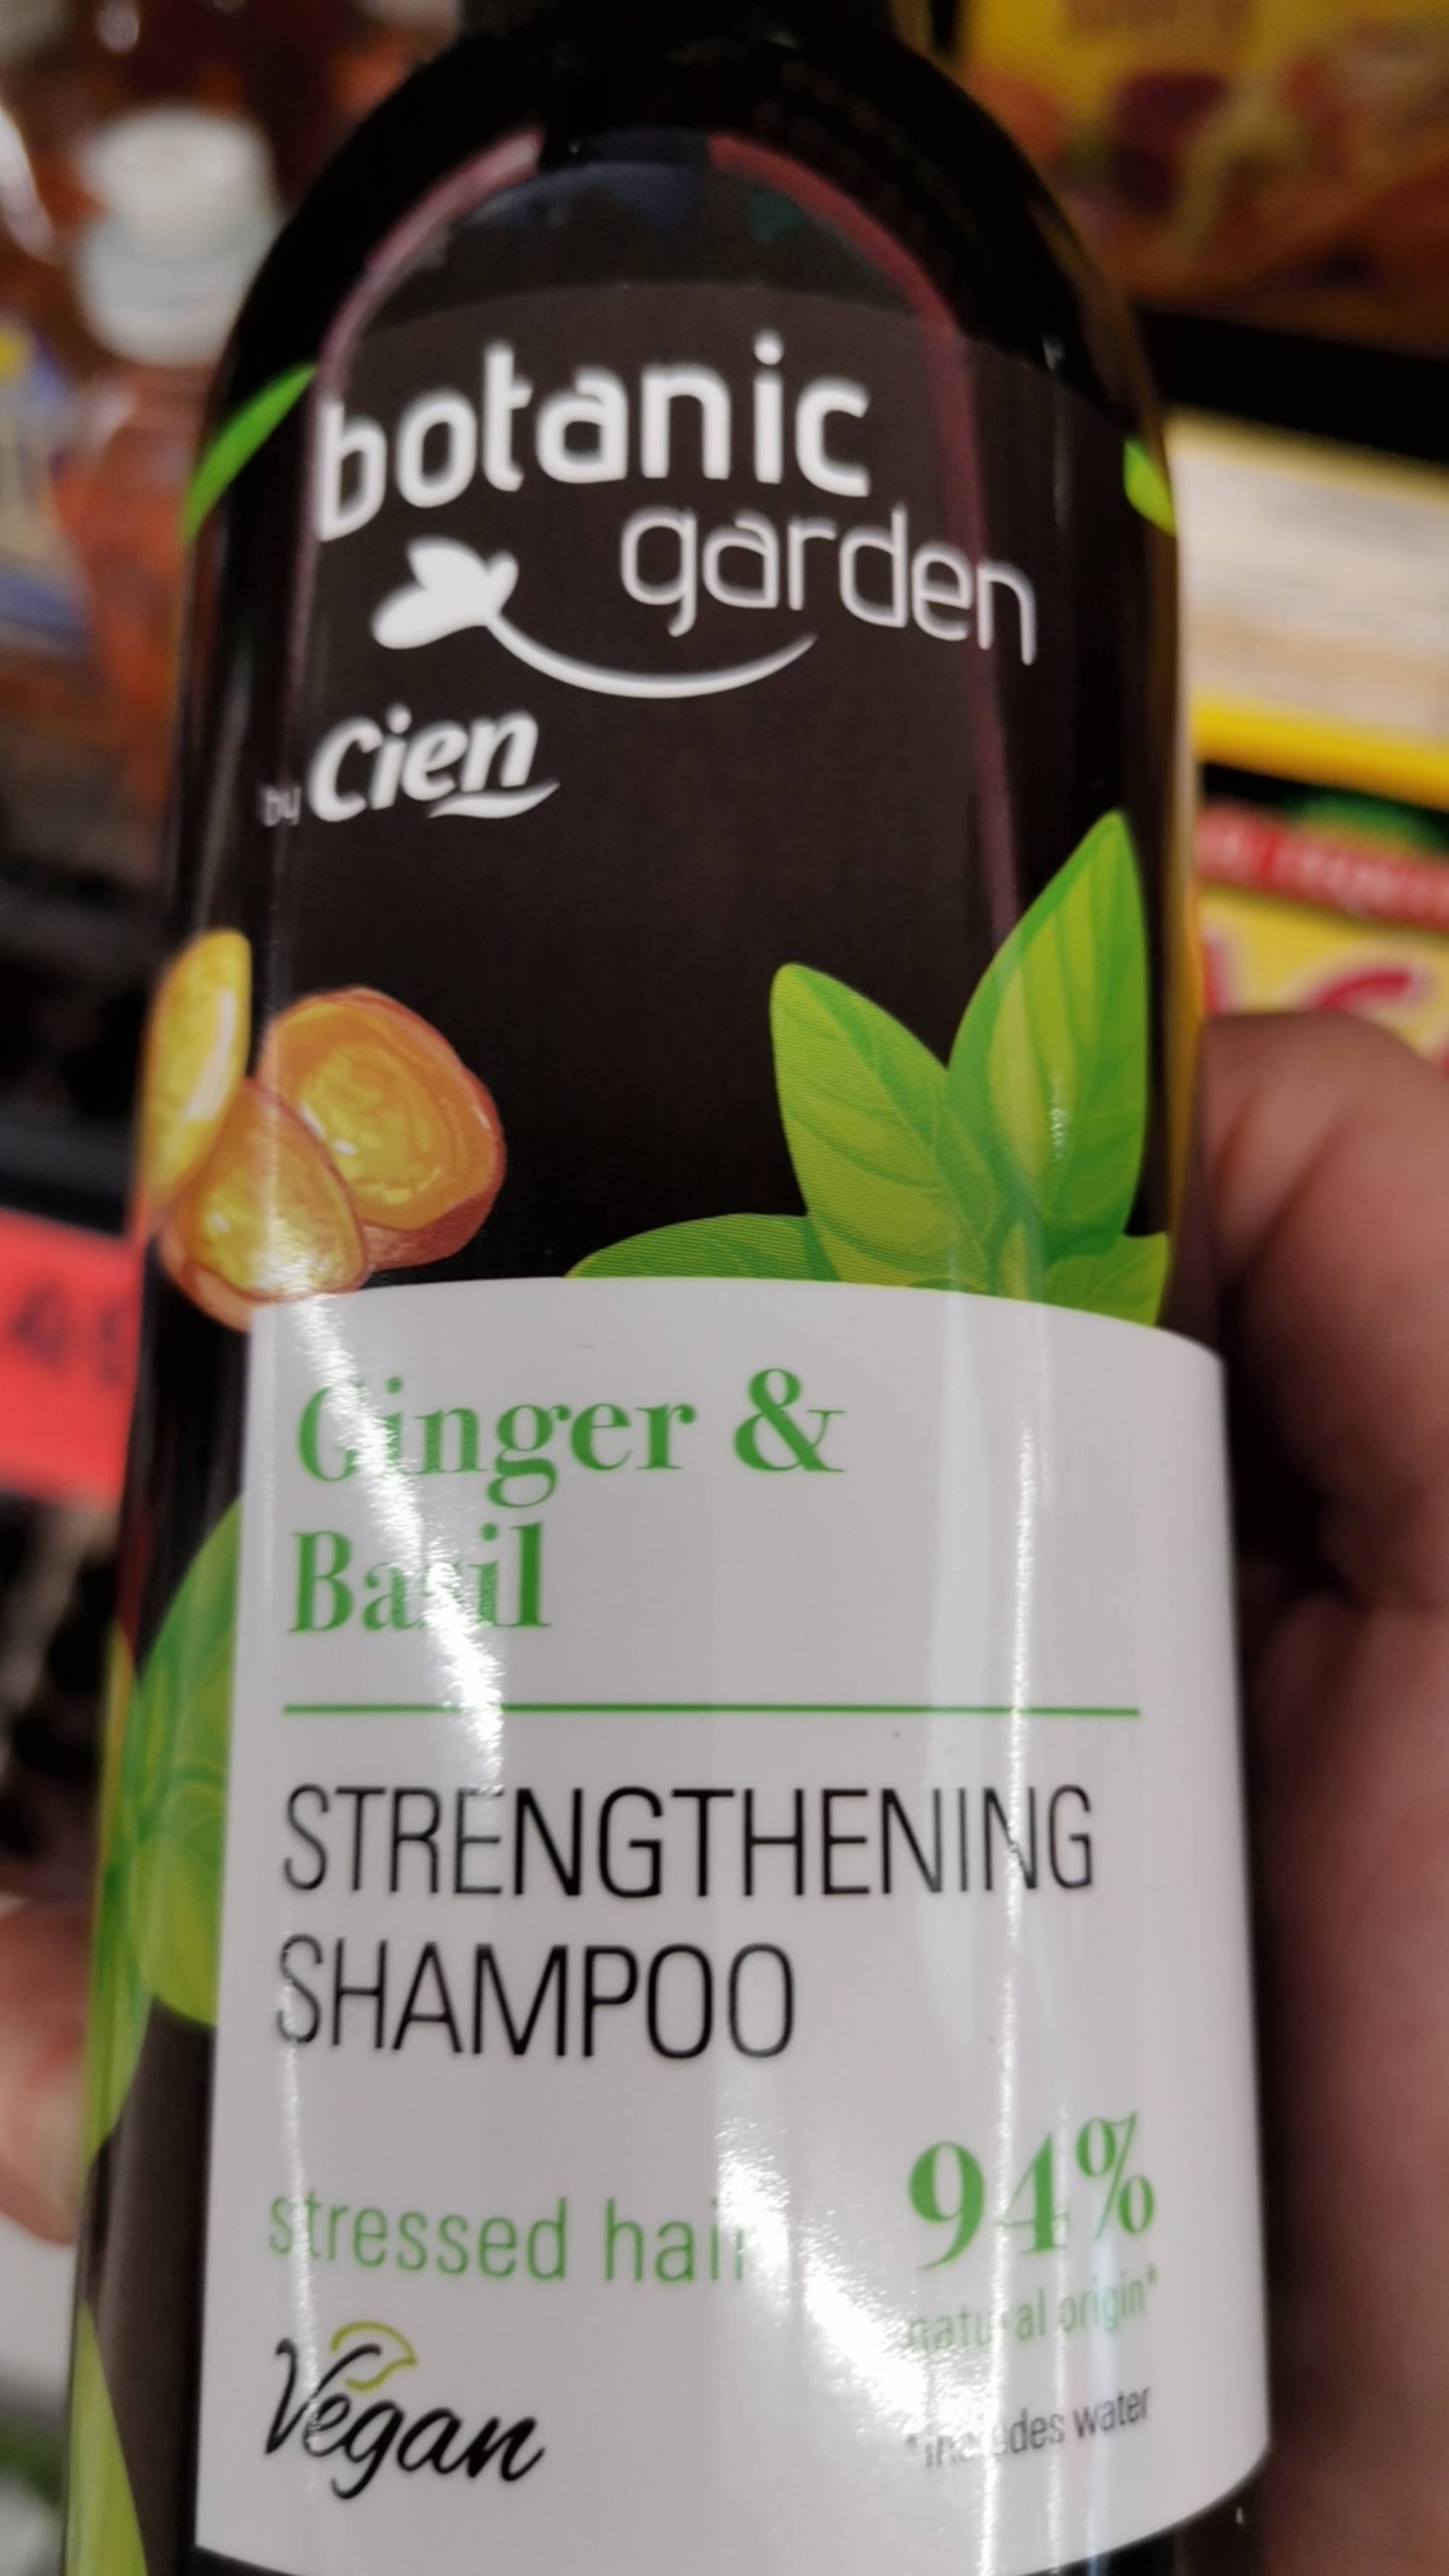 CIEN - Botanic garden - Strengthening shampoo ginger & basil